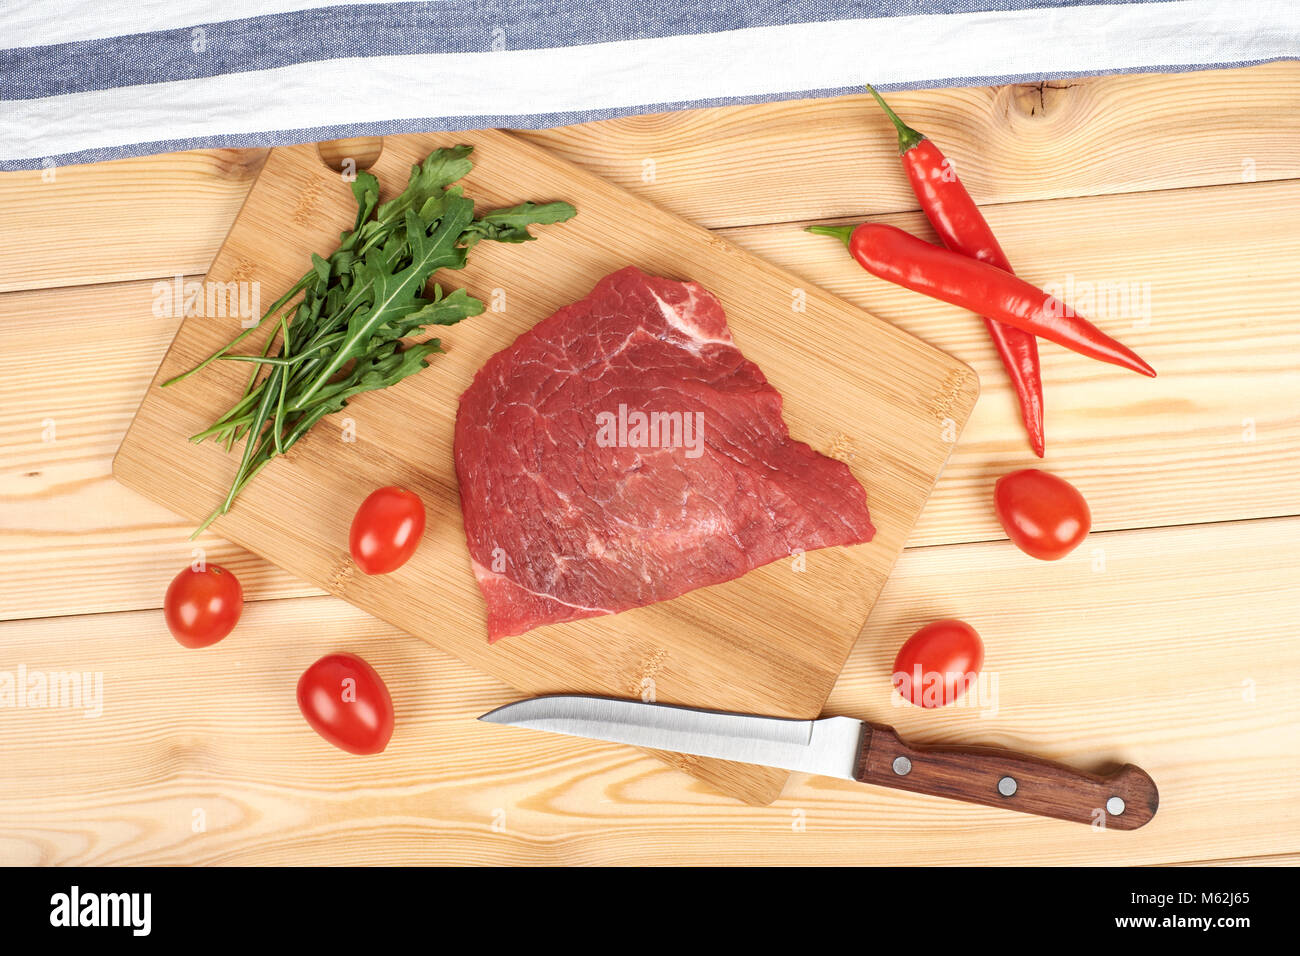 Rohes Rindfleisch Fleisch auf Schneidebrett mit Gemüse auf einem hölzernen Hintergrund Stockfoto